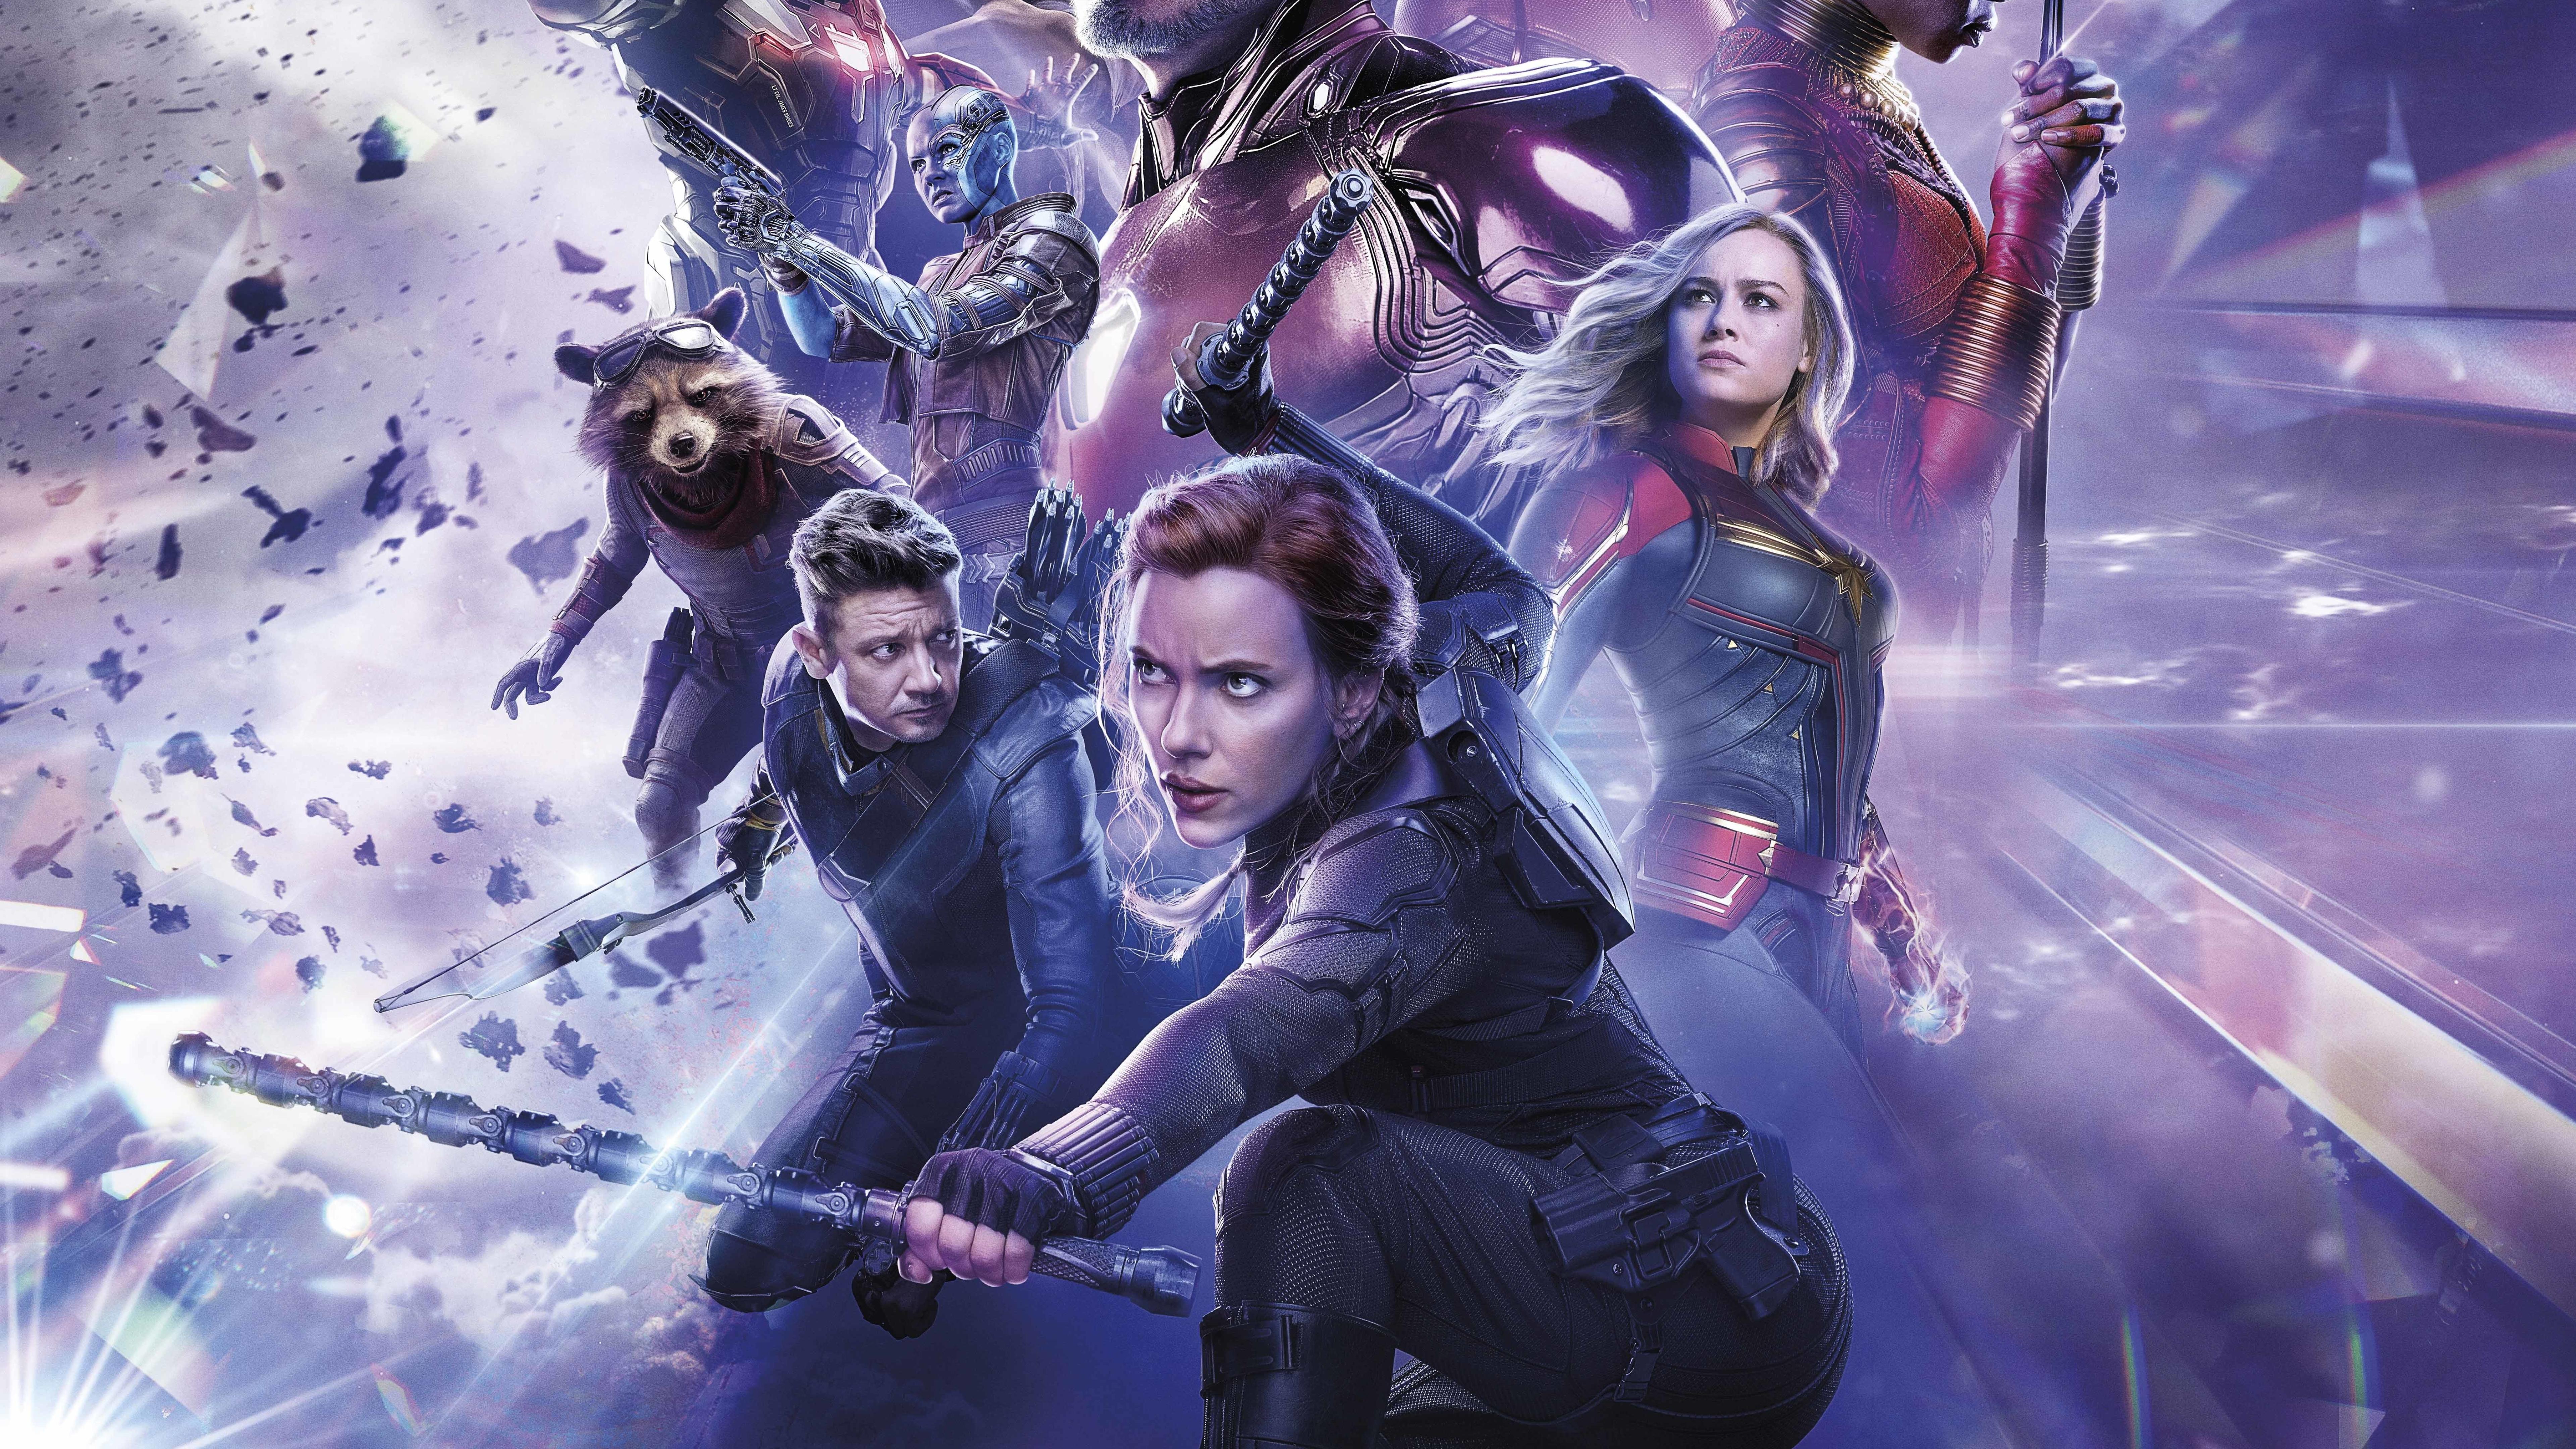 Black Widow Avengers Endgame Official Poster 8K Wallpaper